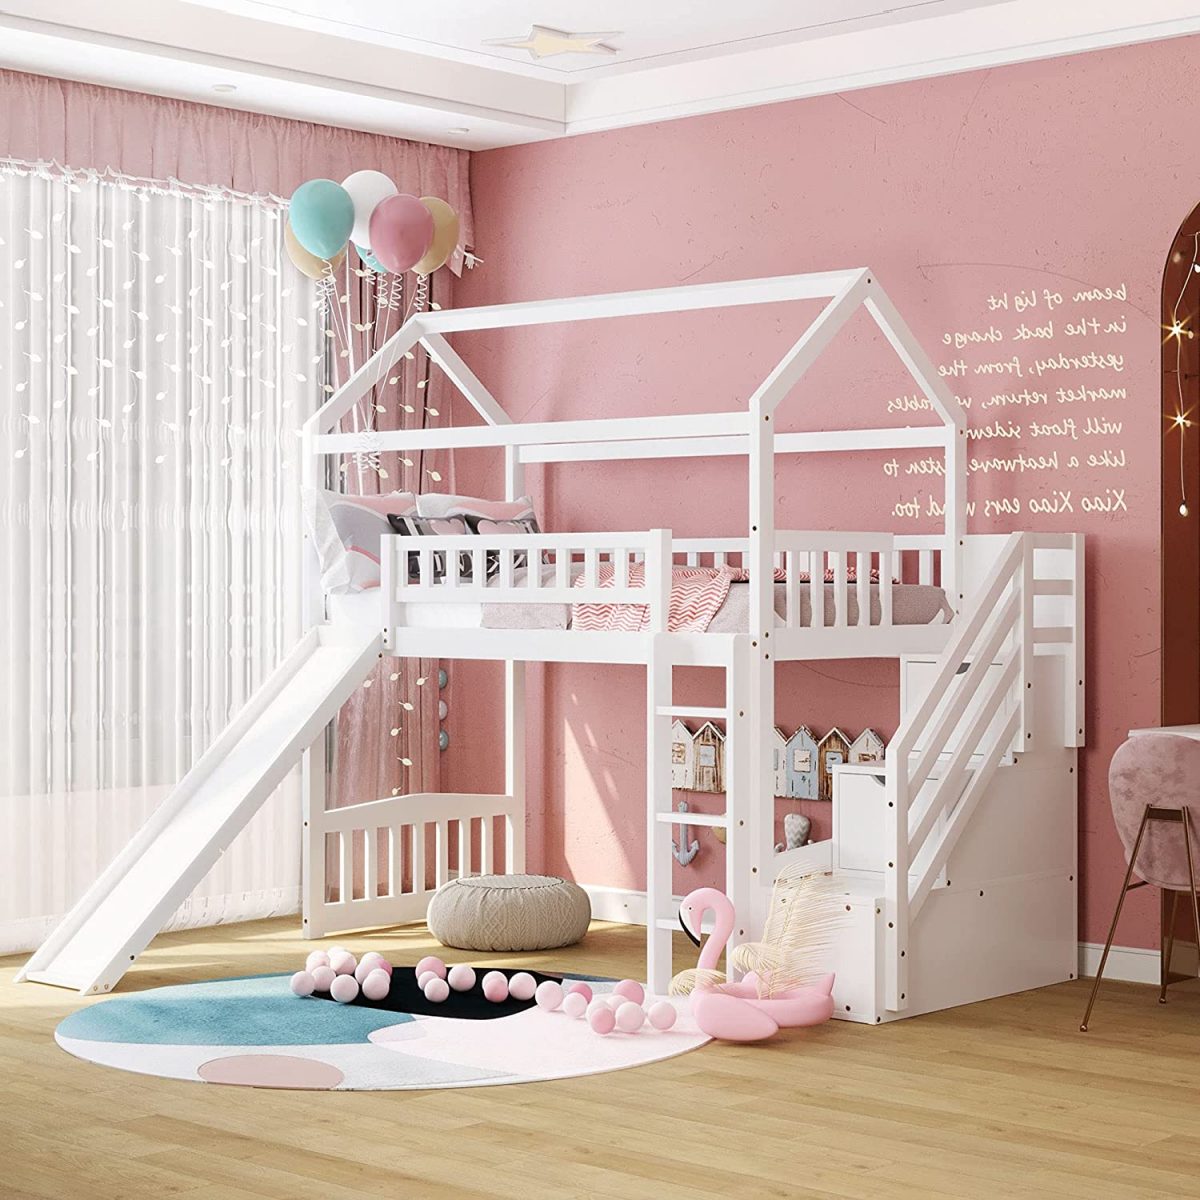 Mẫu nội thất phòng ngủ sắc hồng có giường tầng đẹp cho bé